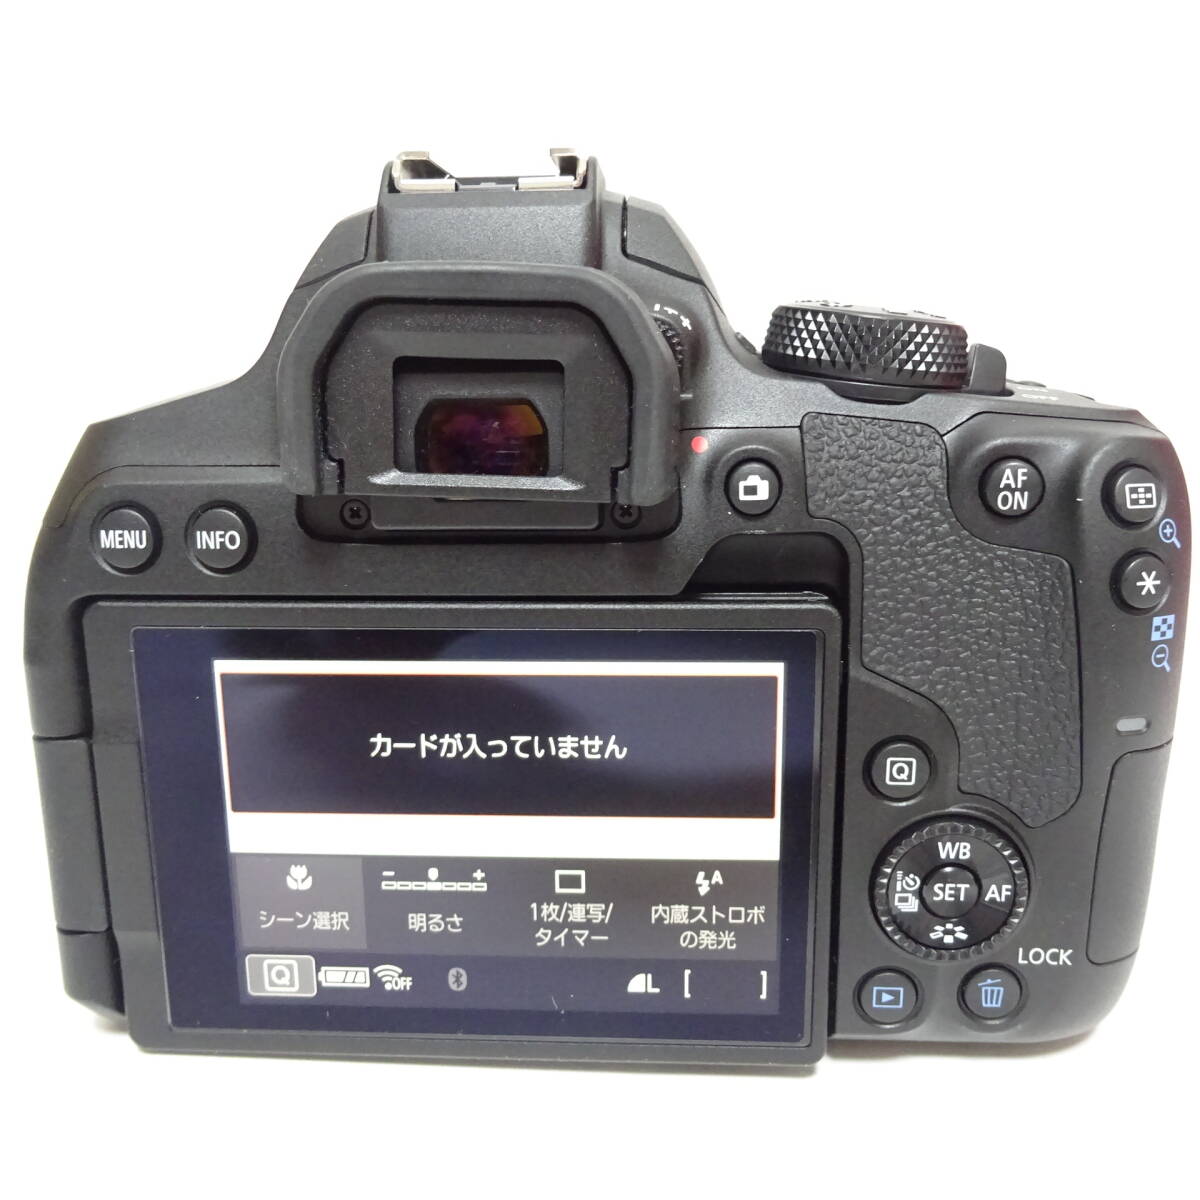 キャノン EOS kiss X10i デジタル一眼カメラ 18-55mm 1:4-5.6 55-250mm 1:4-5.6 レンズ 通電確認済 80サイズ発送 KK-2643445-058-mrrzの画像6